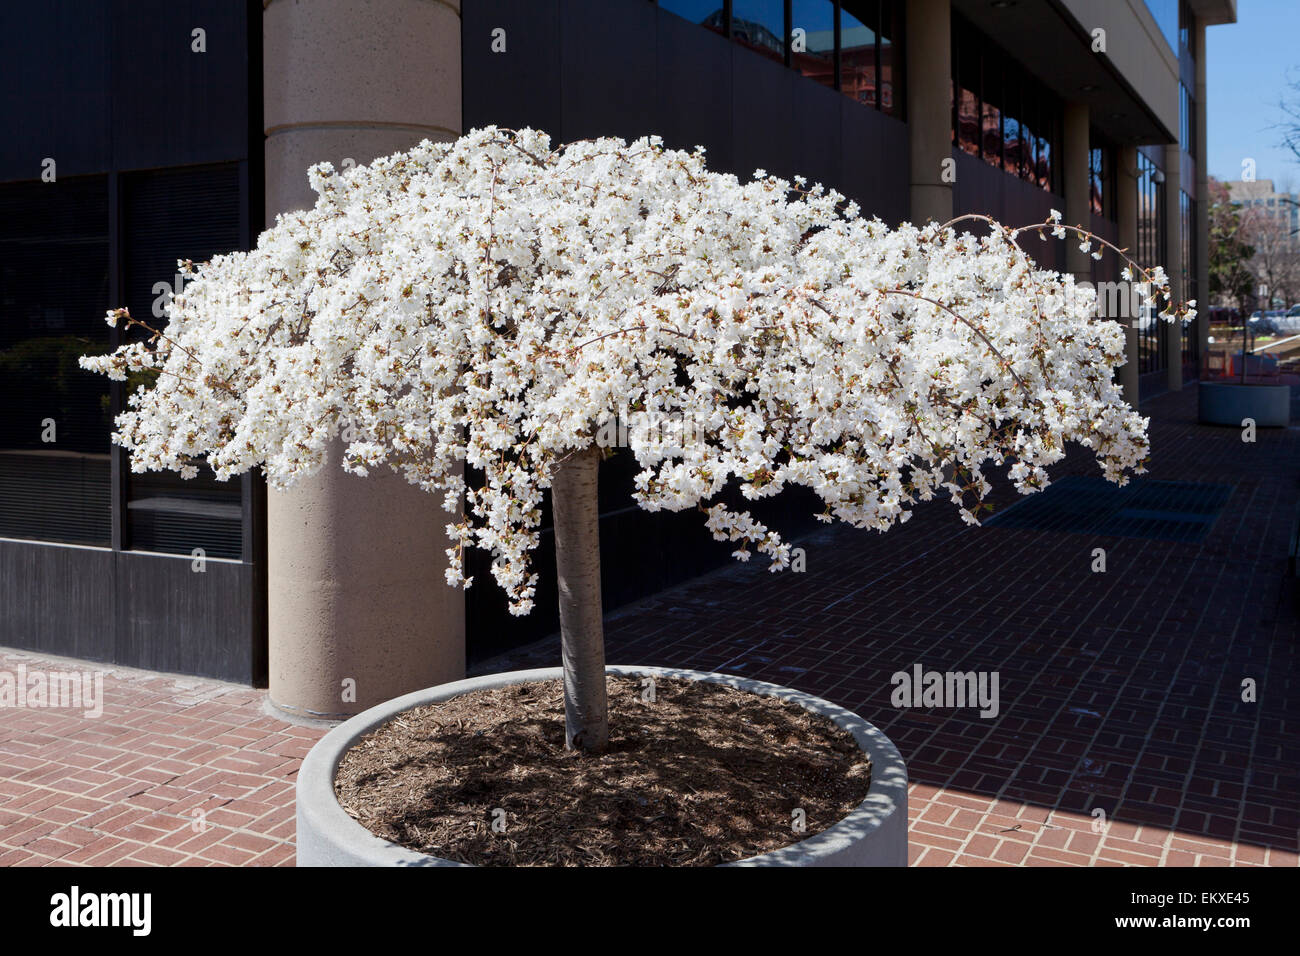 Cerisier pleureur en fleurs contenues dans un semoir, l'extérieur d'un immeuble de bureaux urbains - USA Banque D'Images